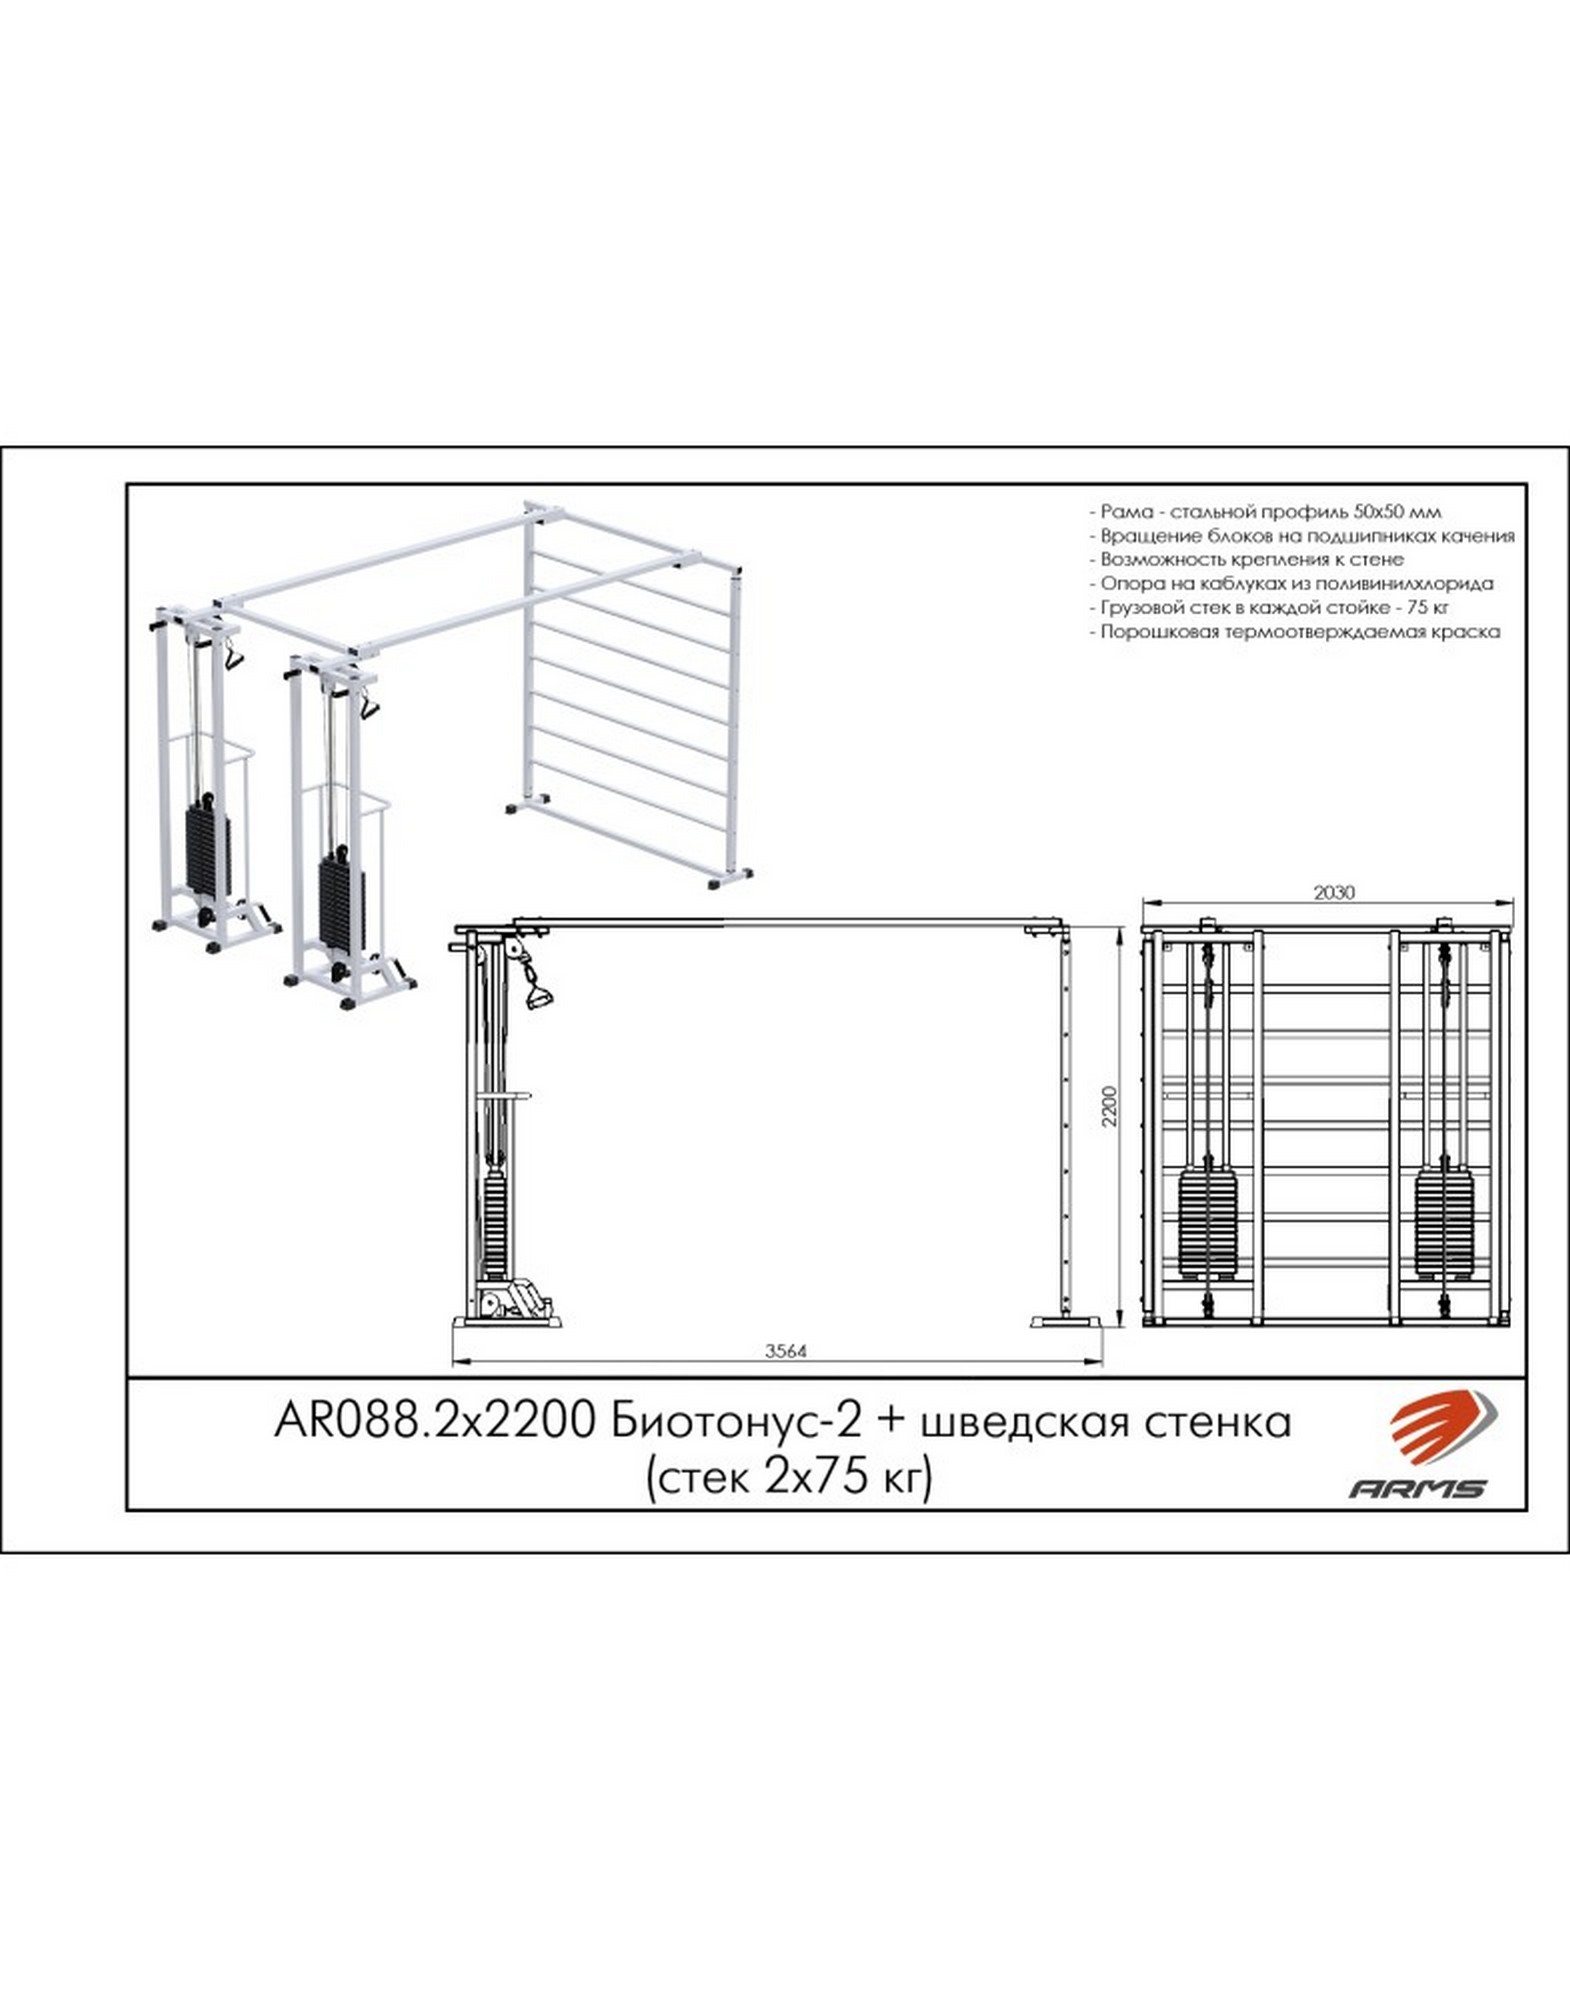 Кроссовер ARMS Биотонус-2 (стек 2х75кг)+ шведская стенка AR088.2х2200 1570_2000